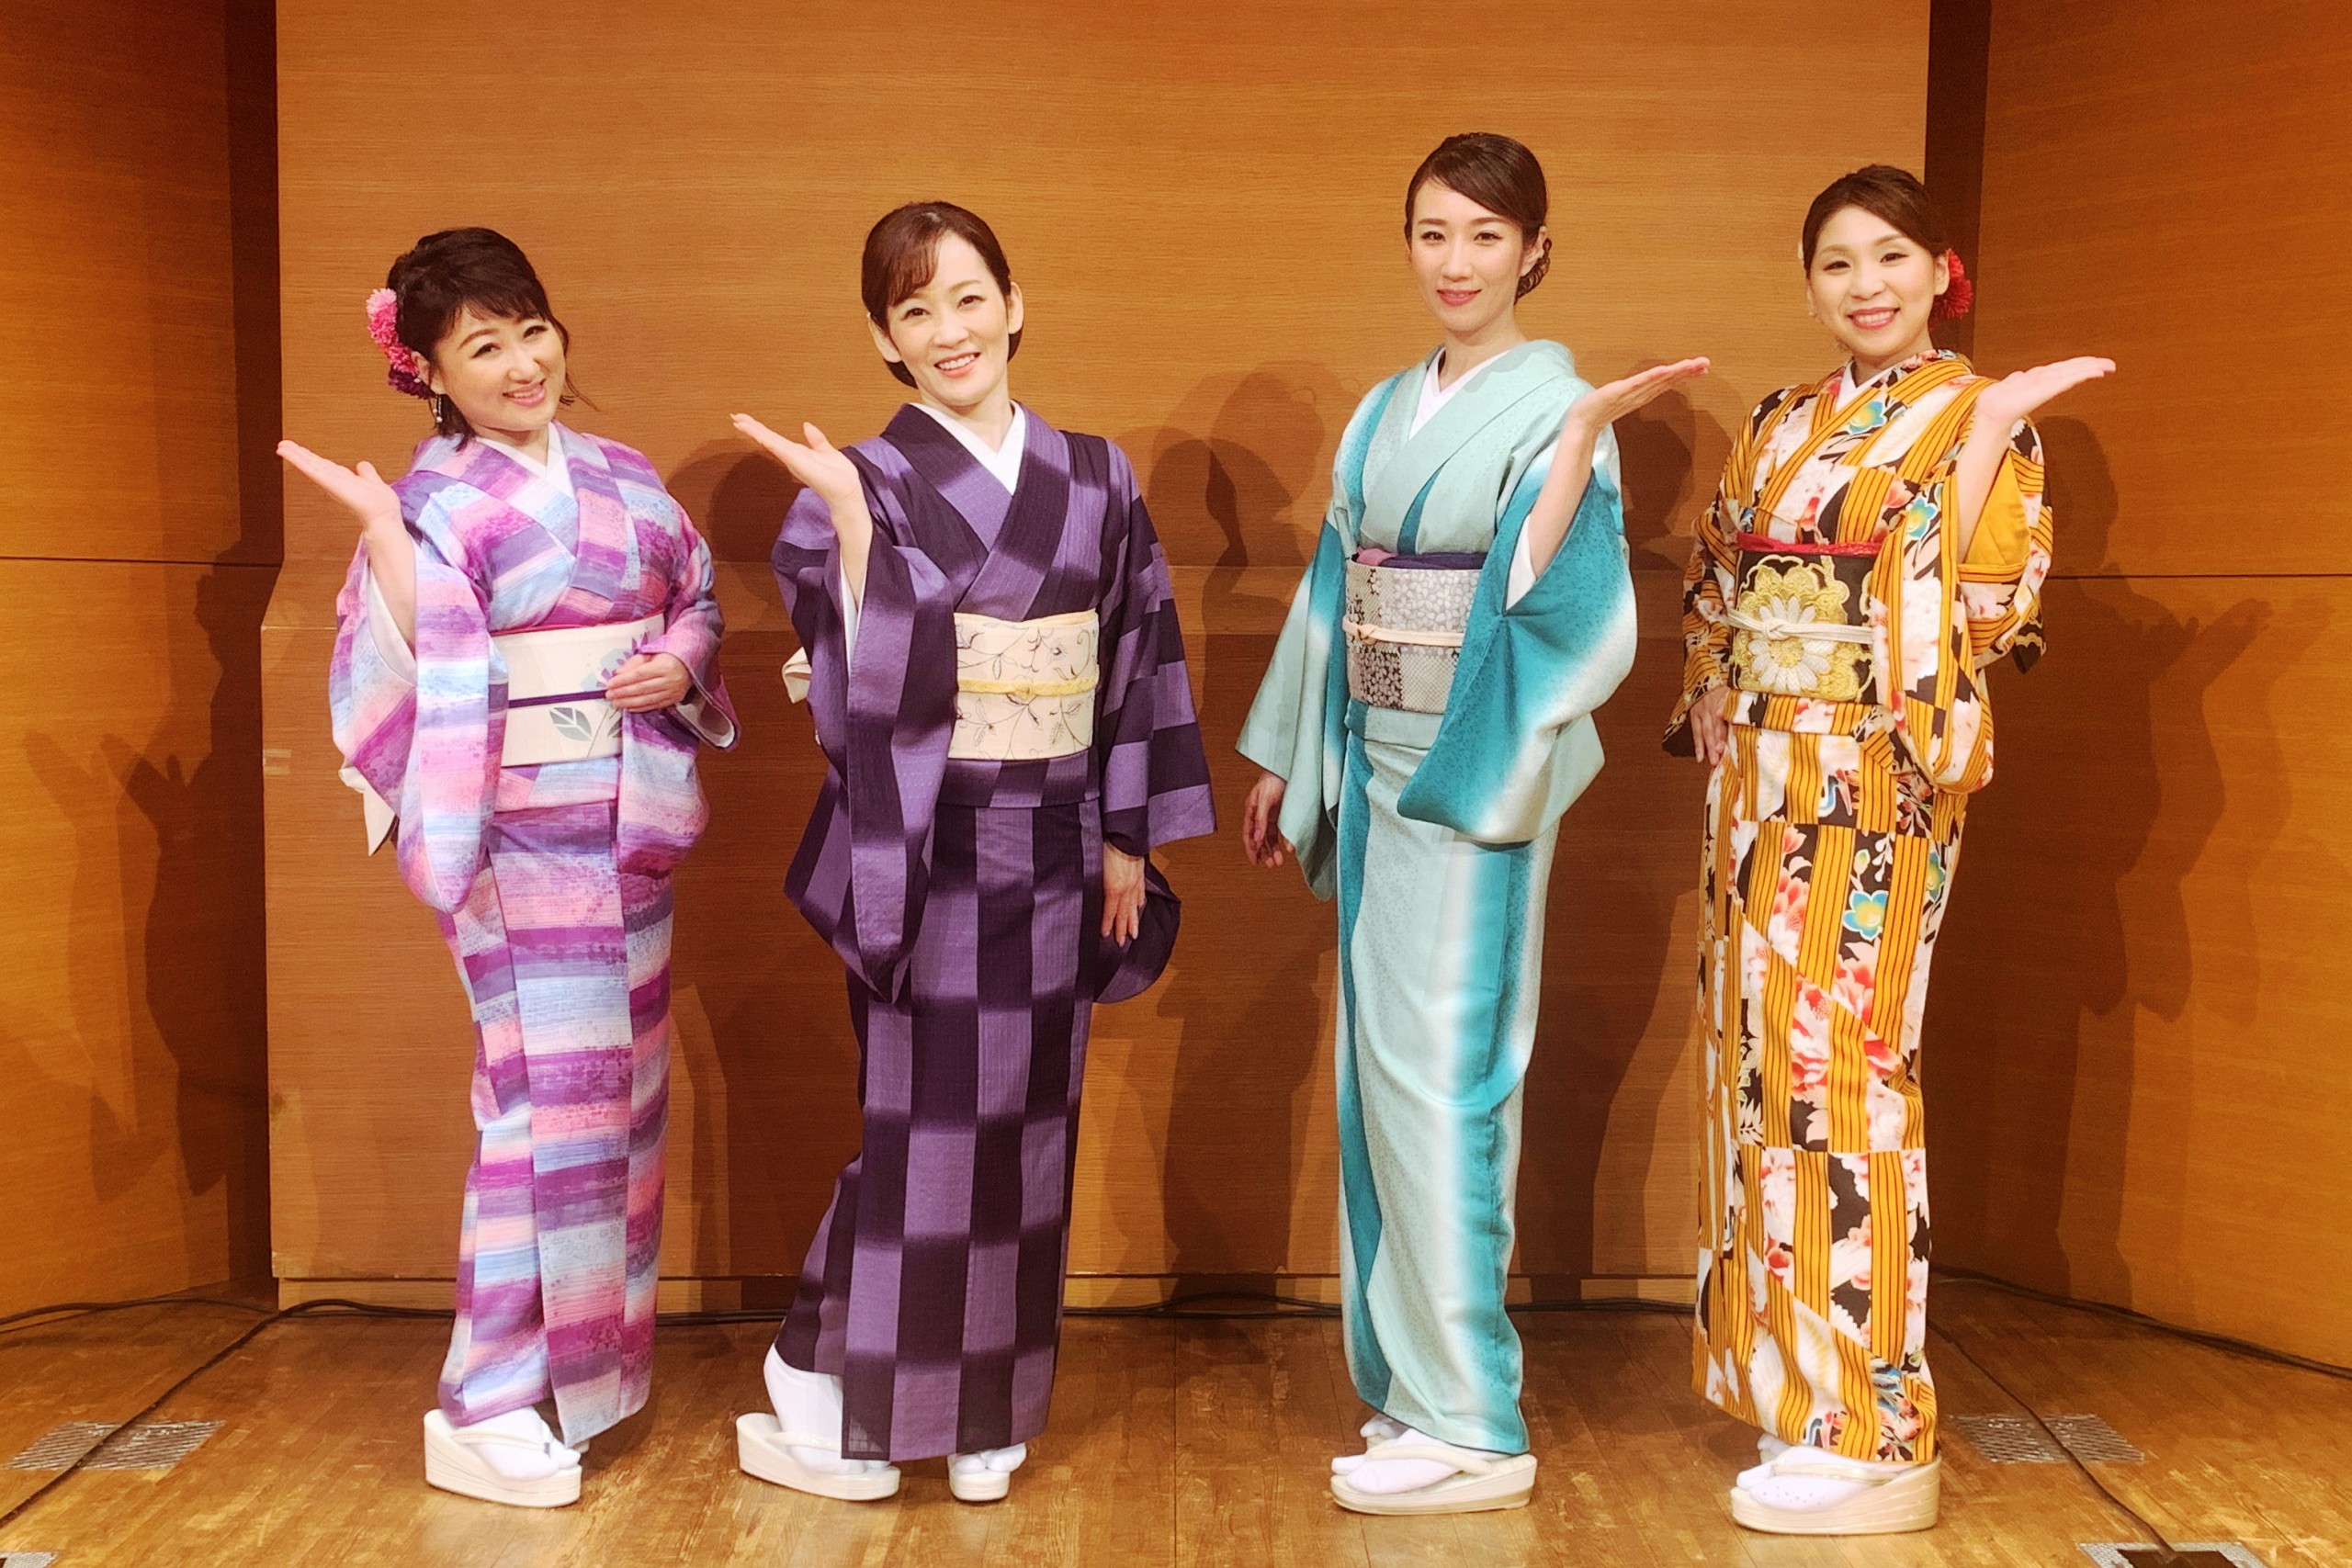 永井裕子、椎名佐千子、井上由美子、水城なつみがナオン祭2022を開催。6年ぶりの有観客での夏フェスに喜びと感謝 - オトカゼ 〜音楽の風〜